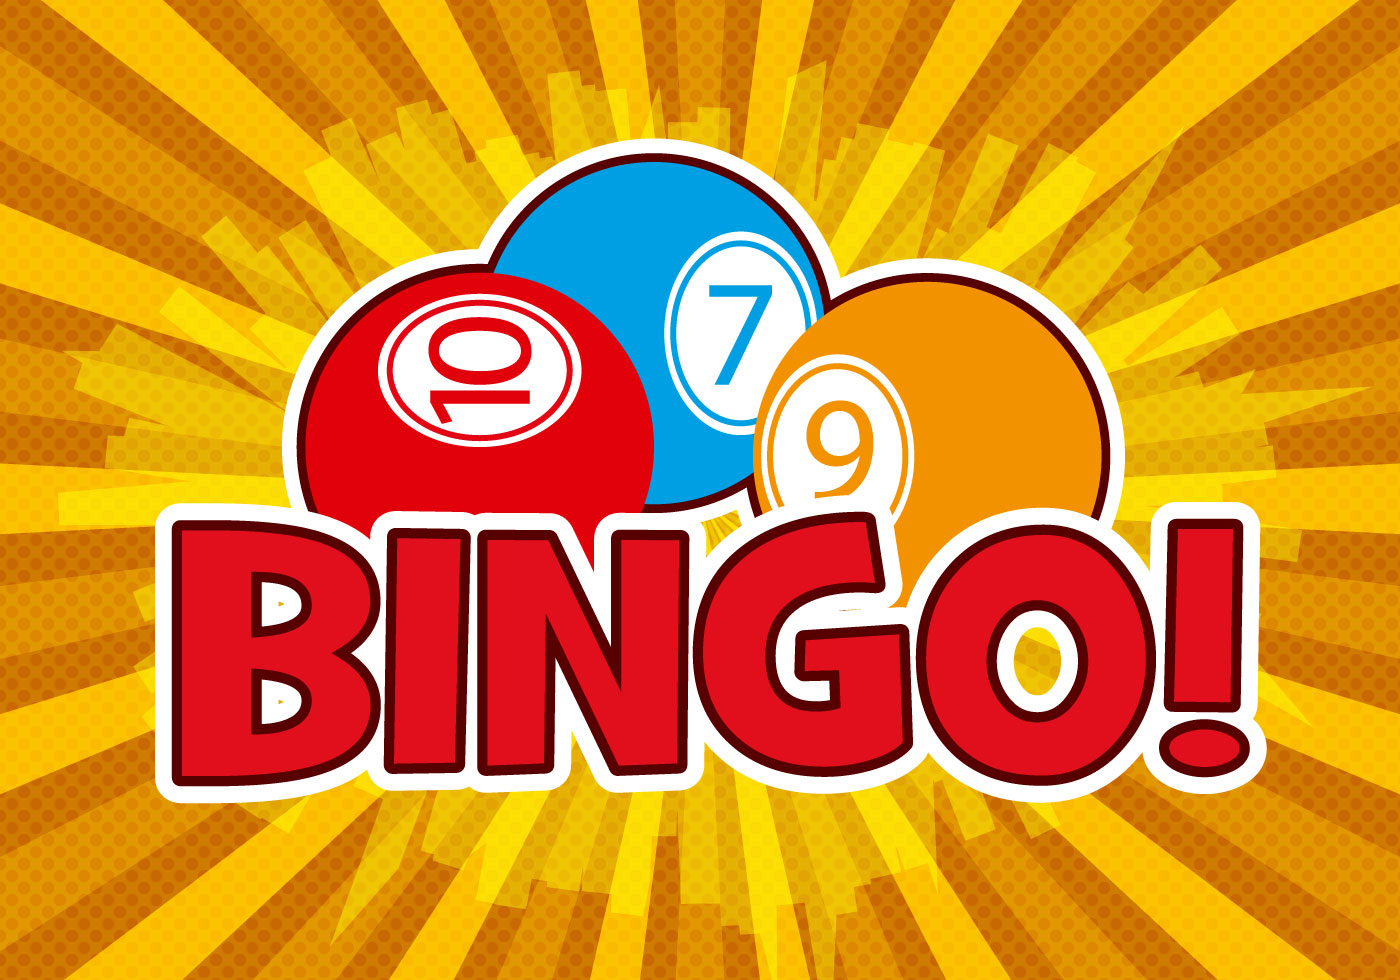 free-bingo-design-vector-download-free-vector-art-stock-graphics